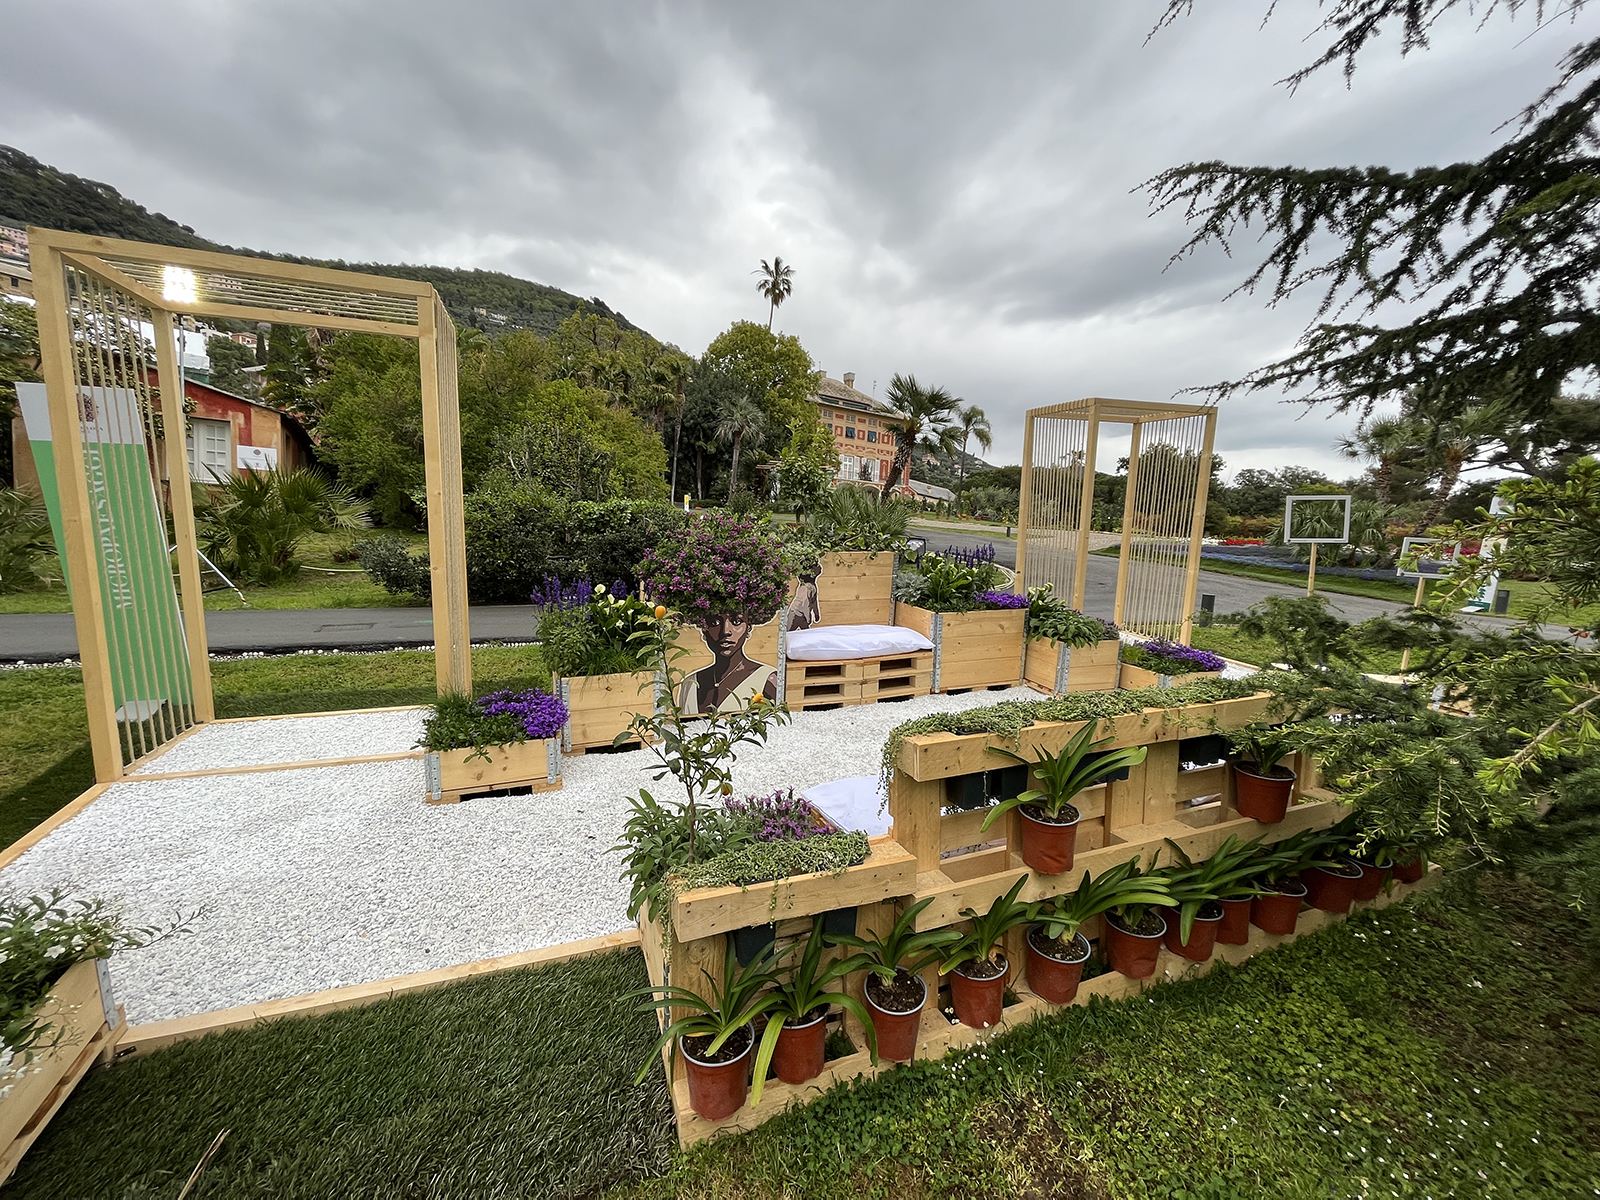 Geotessile multiuso per un’opera temporanea di giardinaggio, Fiera Euroflora 2022, Genova (GE)